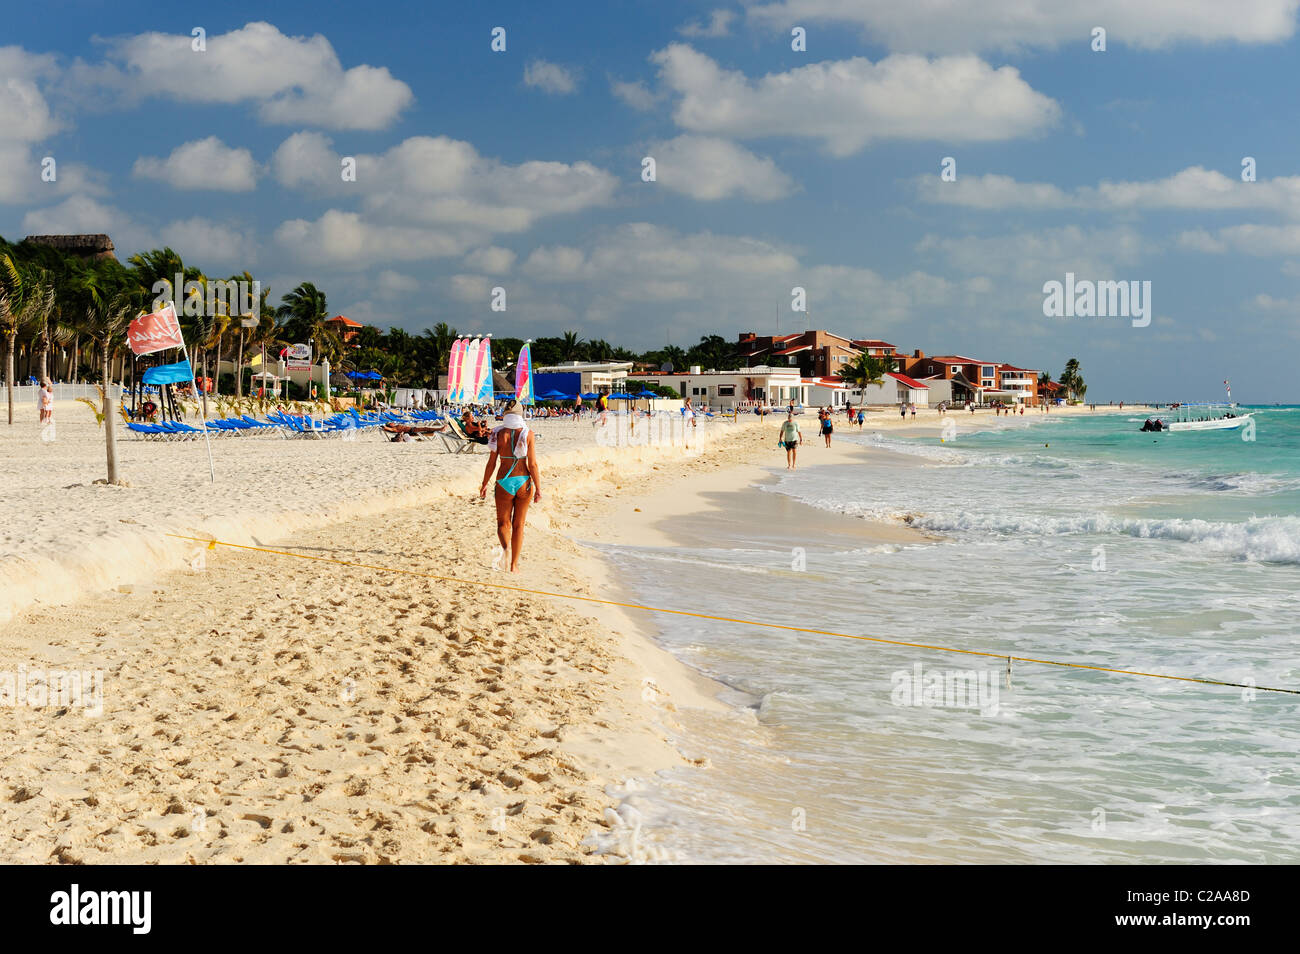 La plage de Playa del Carmen, Quintana Roo, Mexique Banque D'Images